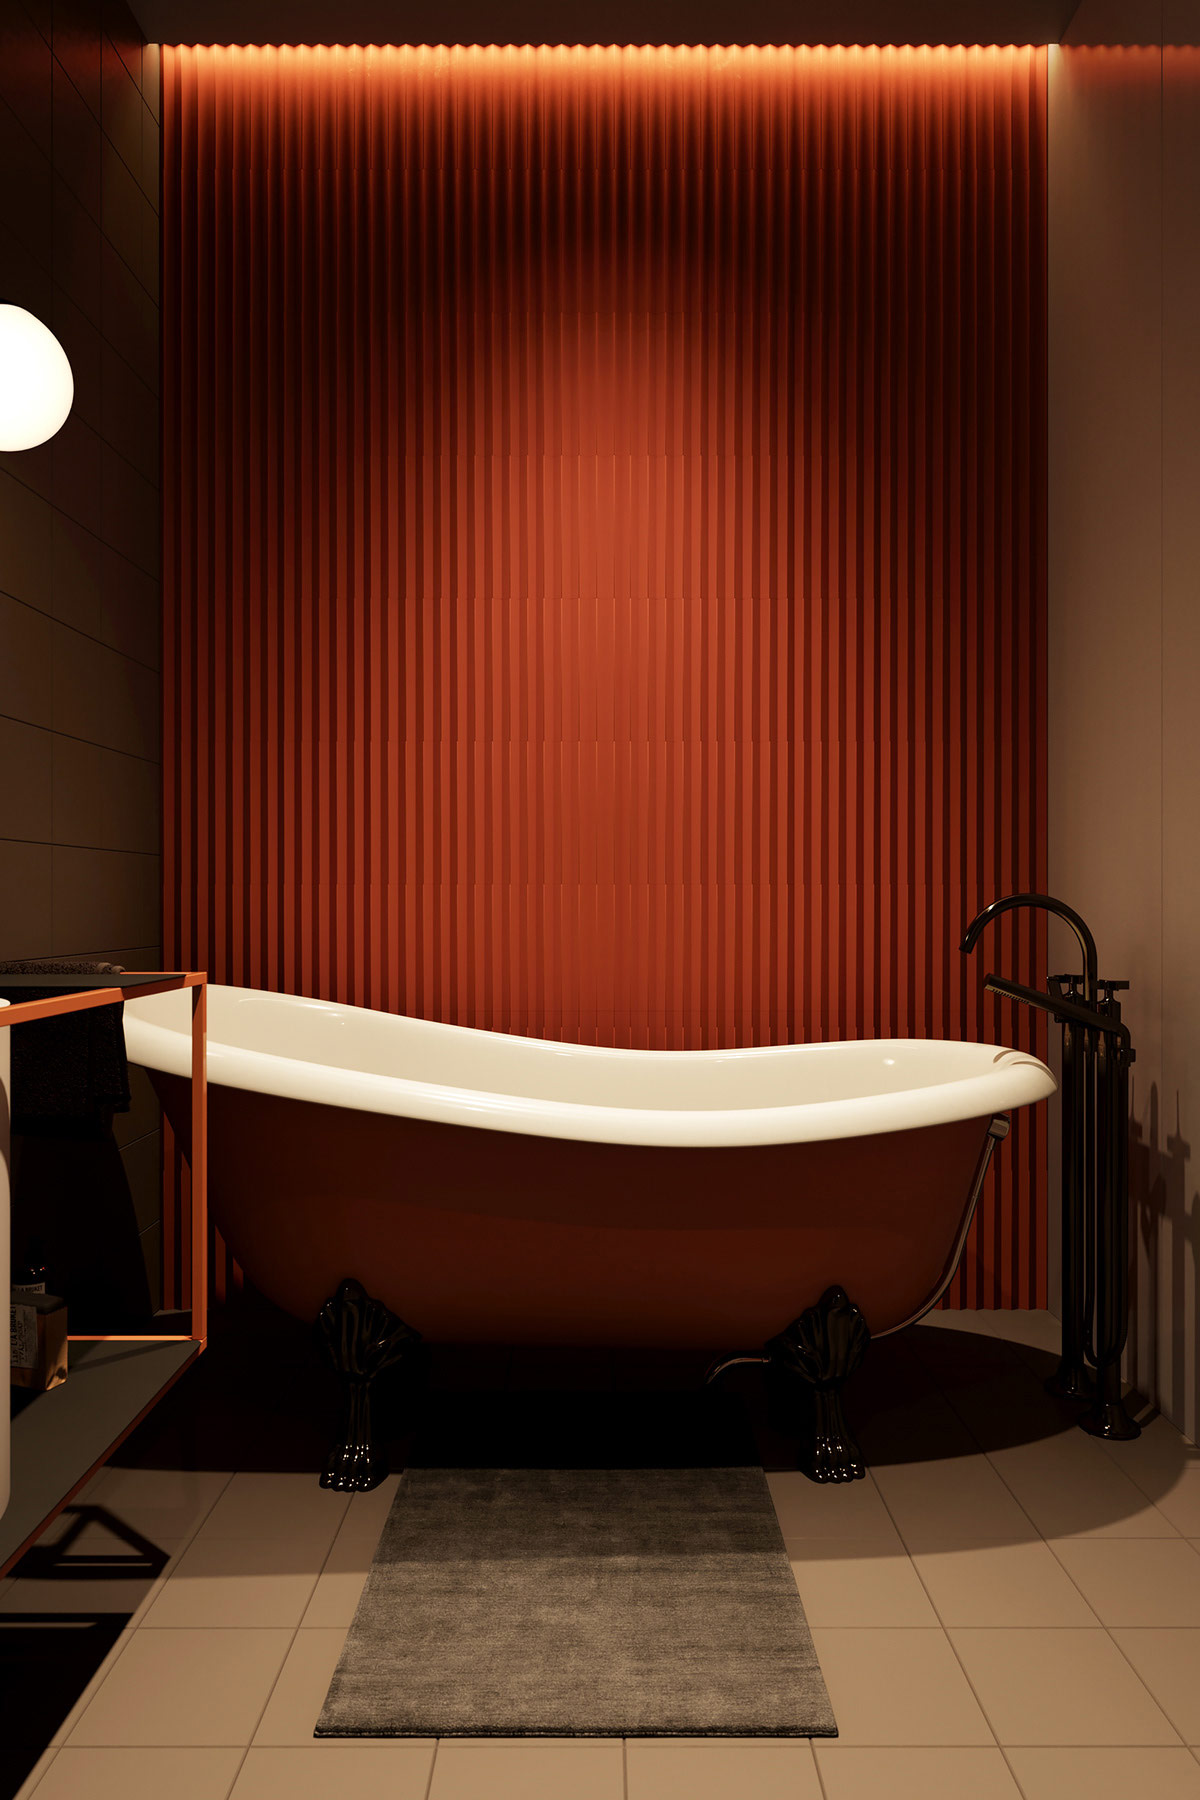 Chiếc bồn tắm nằm màu cam - trắng với phần chân thiết kế bóng bẩy siêu đẹp, kết hợp với thiết kế bức tường tạo cảm giác sang chảnh tuyệt đối cho quý cô độc thân.